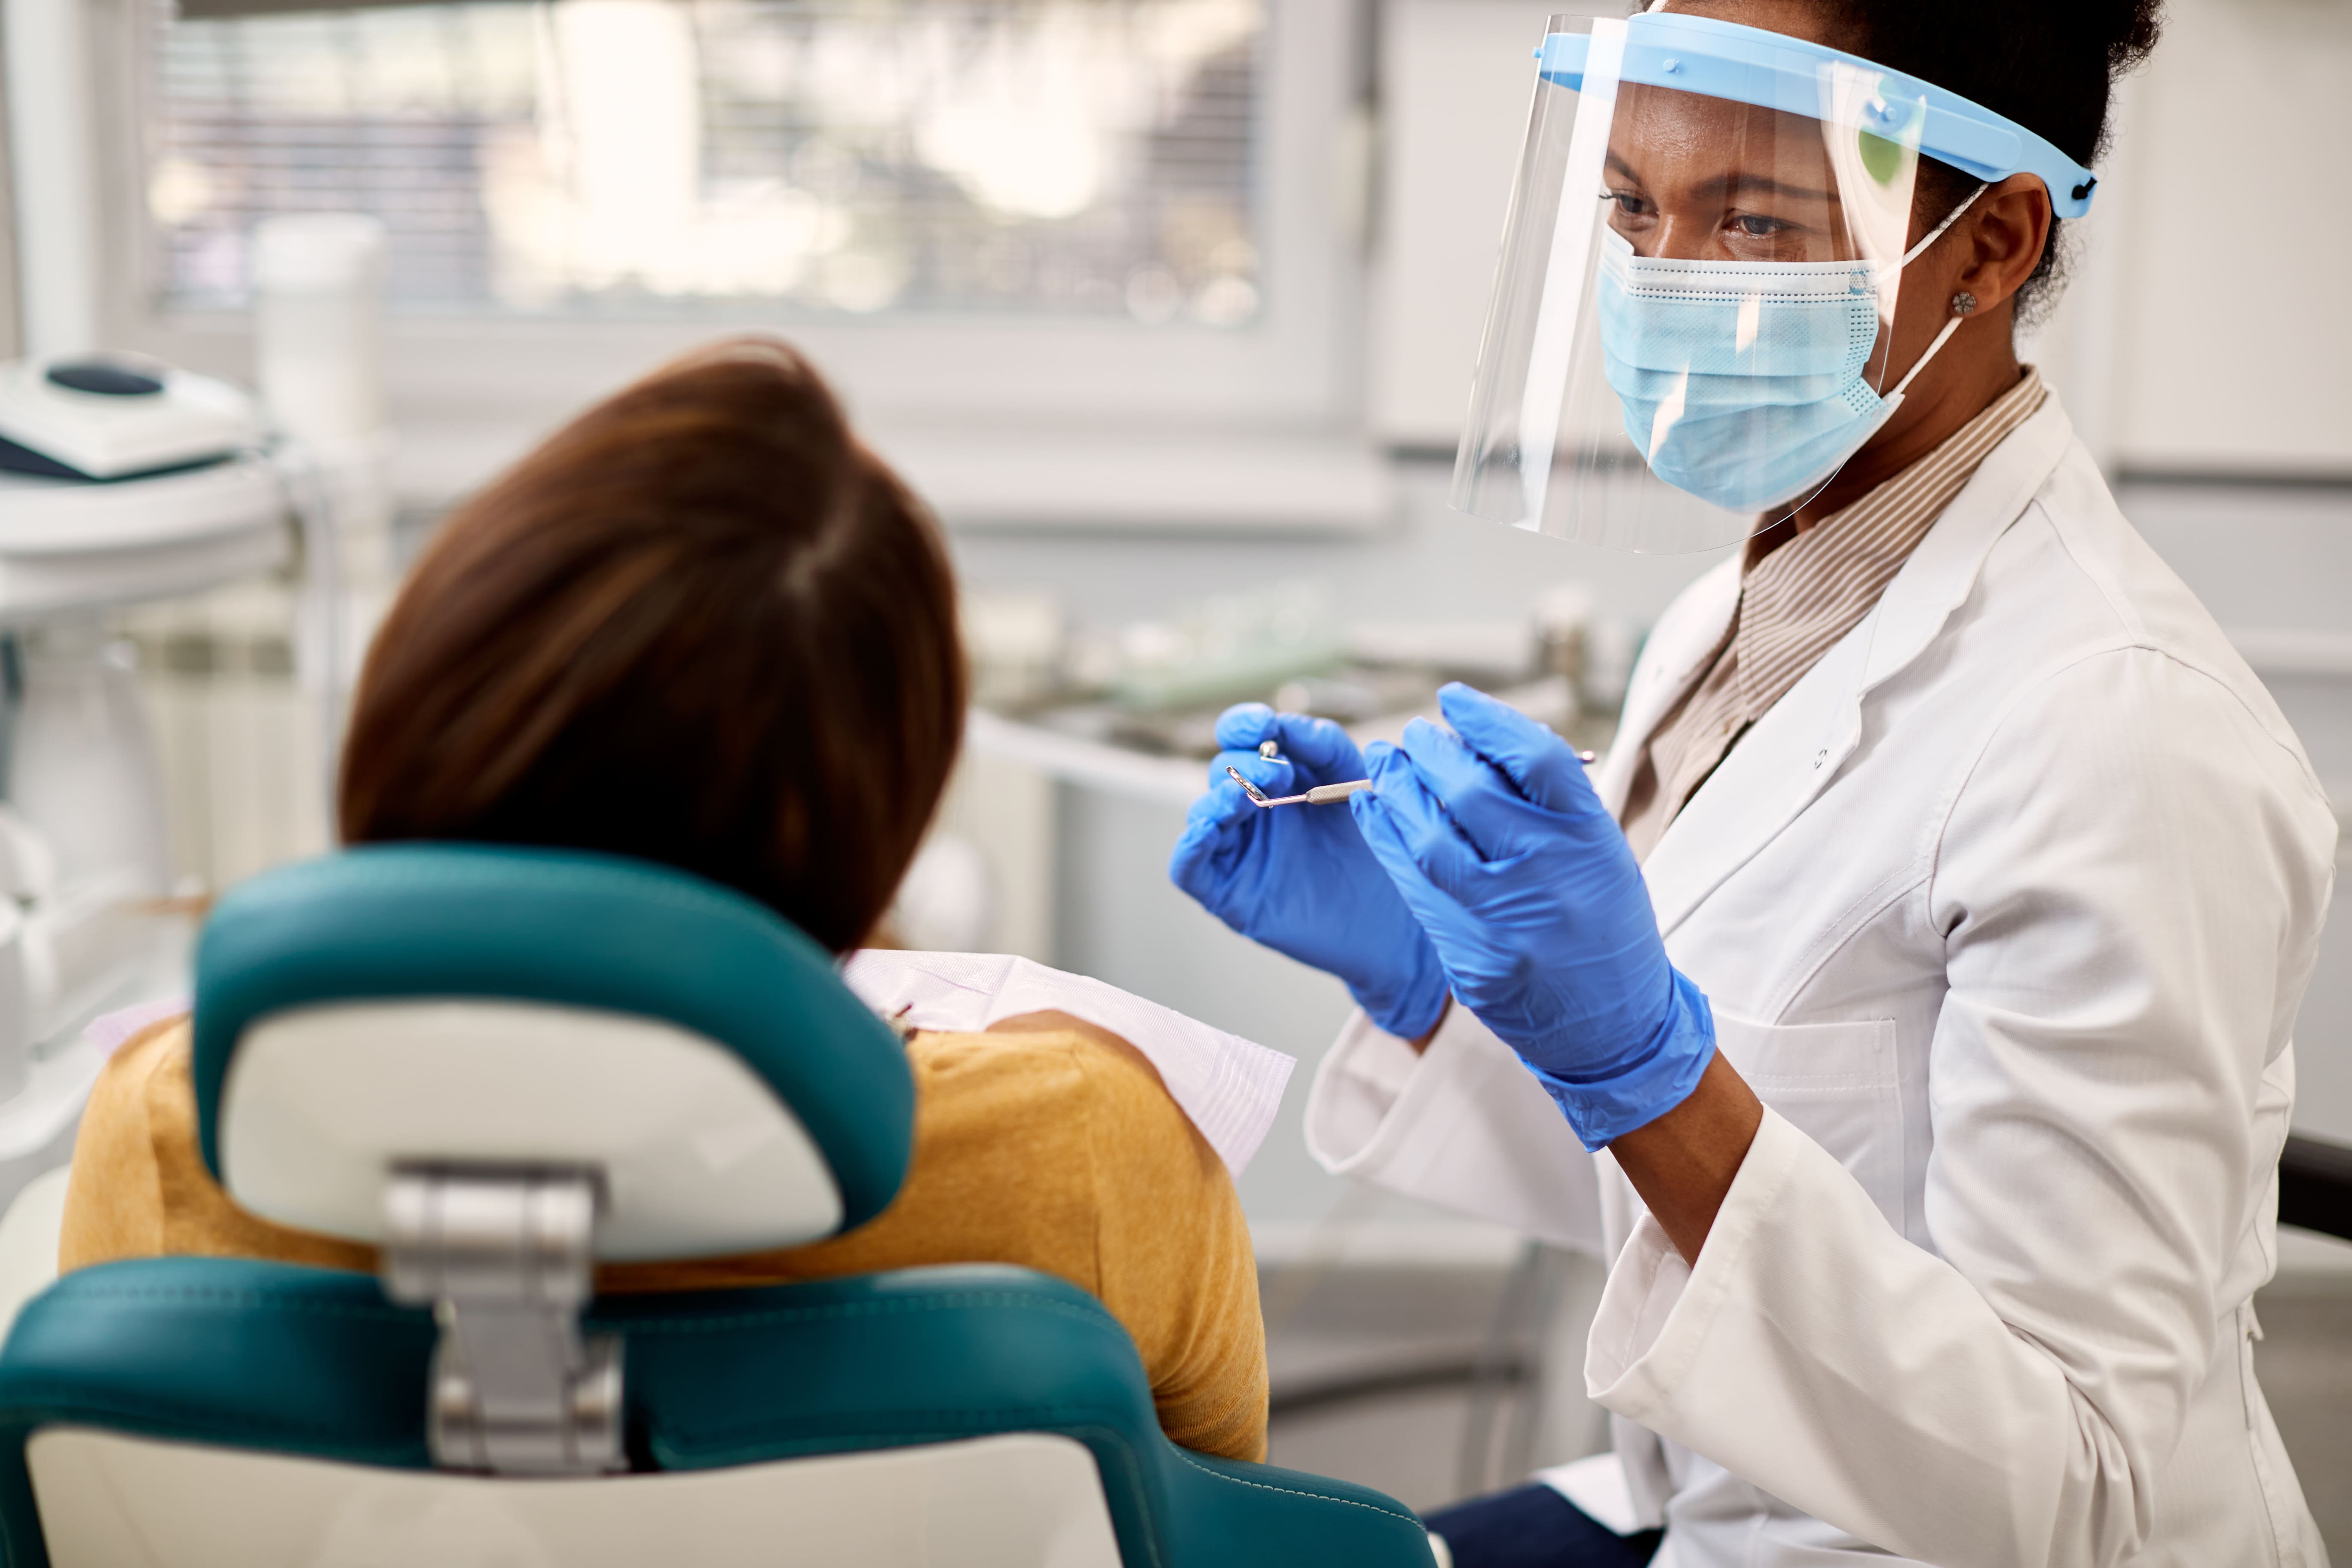 Odontologia clínica geral em Presidente Prudente: quando agendar uma consulta?